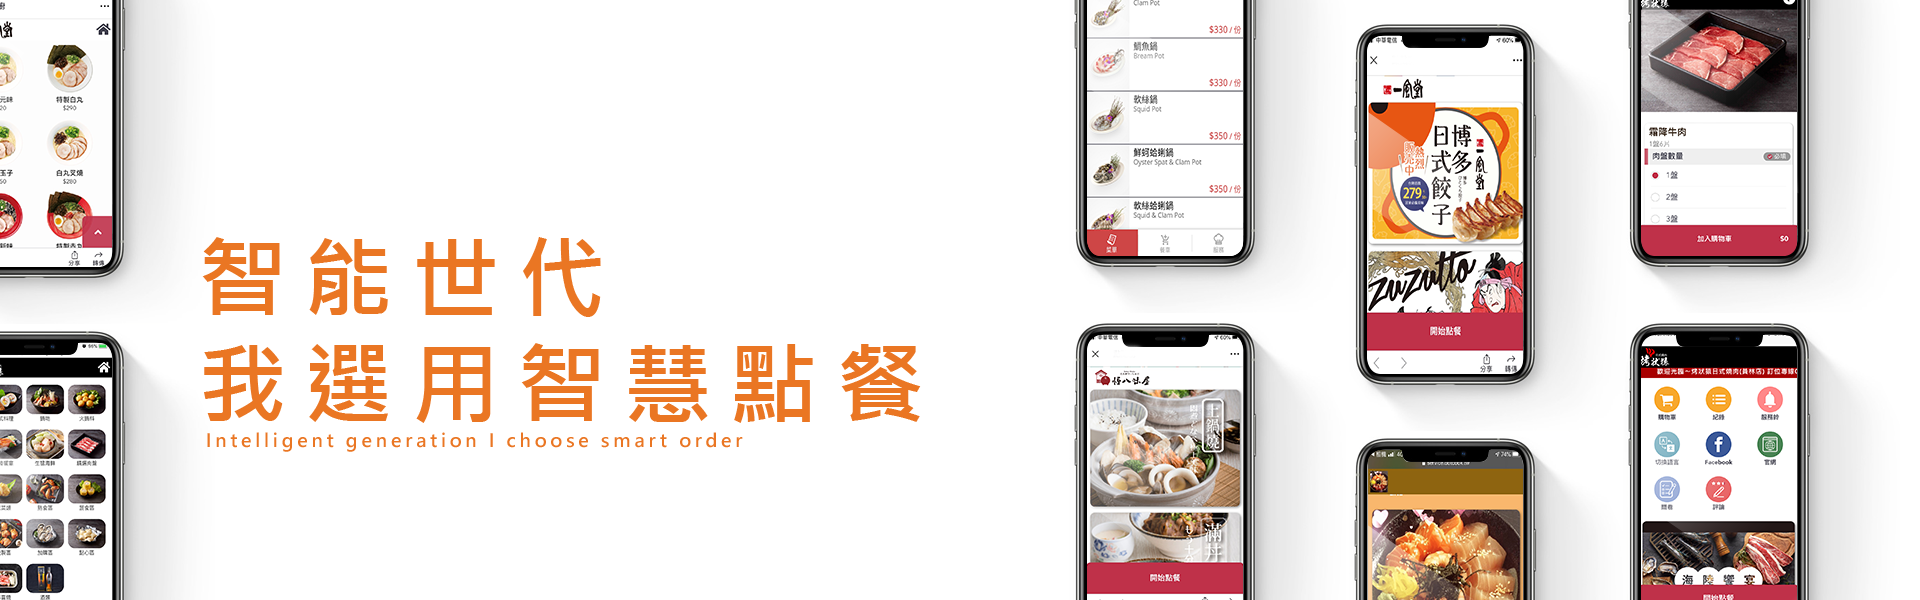 选用智慧手机点餐系统帮助您升级餐厅进入科技化的智能世代